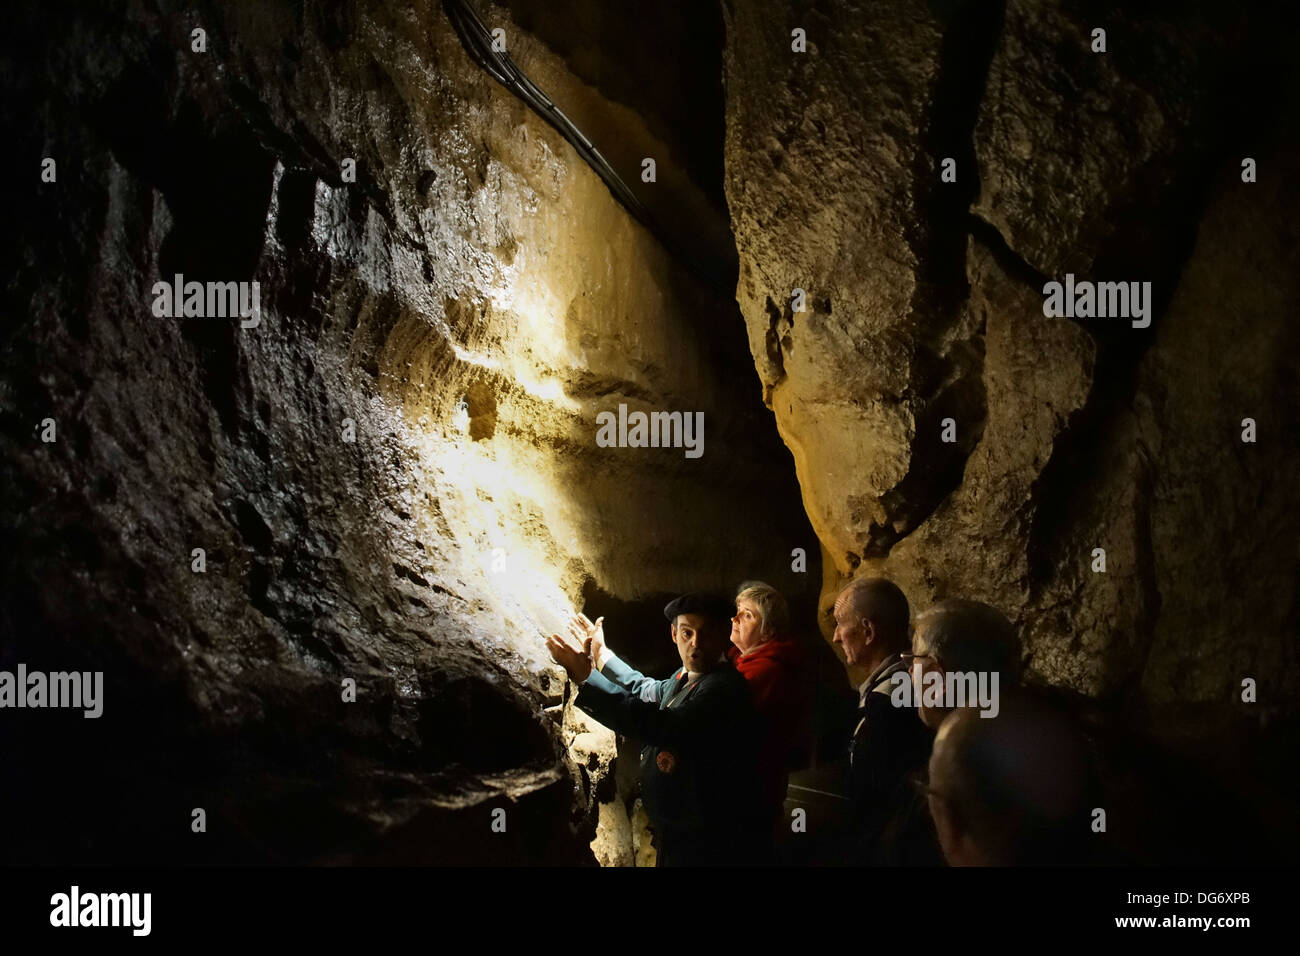 France, Midi-Pyrénées - Grotte de Betharram, caverns near Lourdes. Guide lectures to tour group. Stock Photo